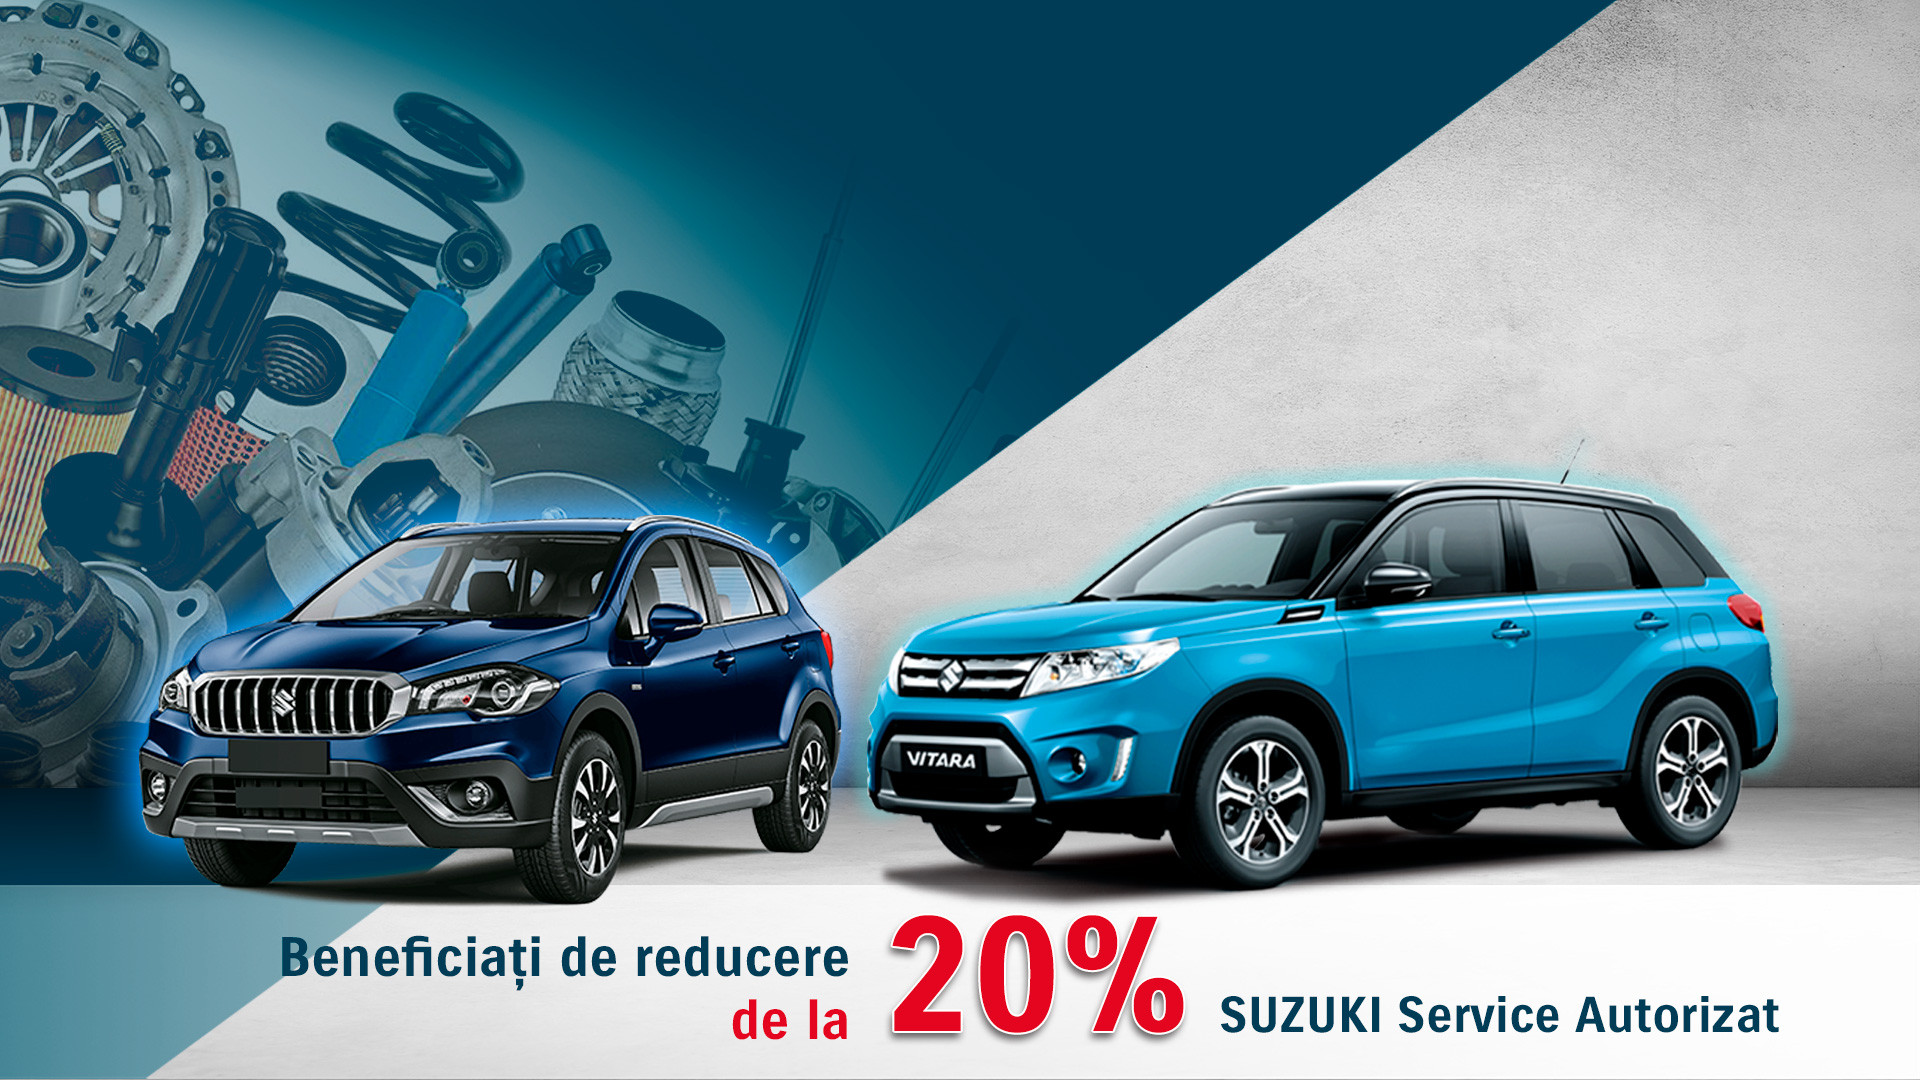 Suzuki Service – DE LA 20% REDUCERE CU OFERTA